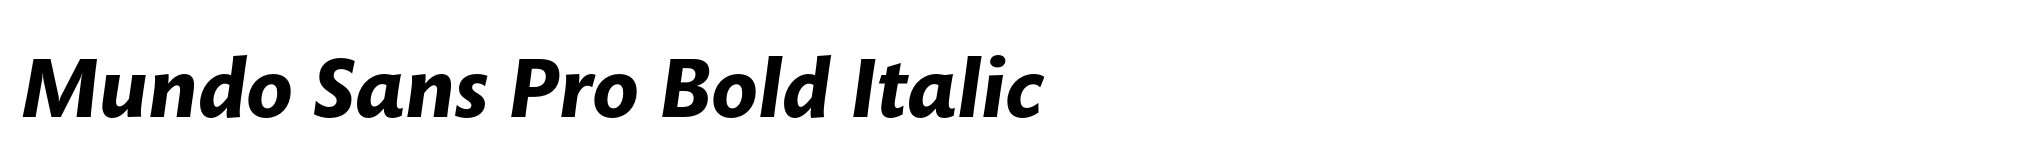 Mundo Sans Pro Bold Italic image